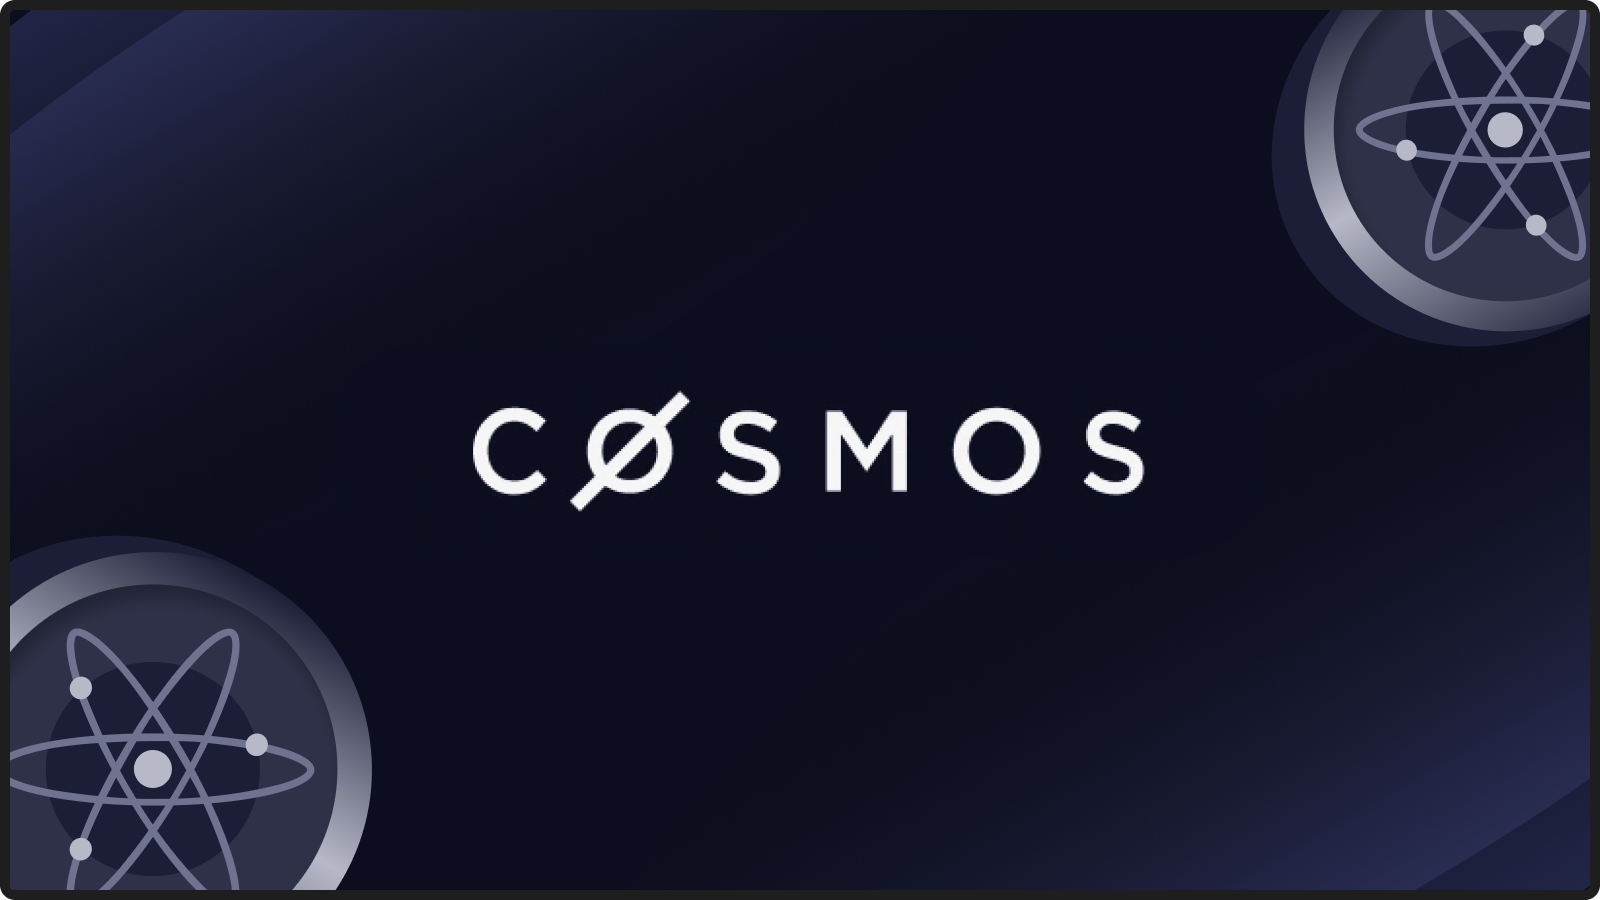 Enter the Ecosystem: Cosmos